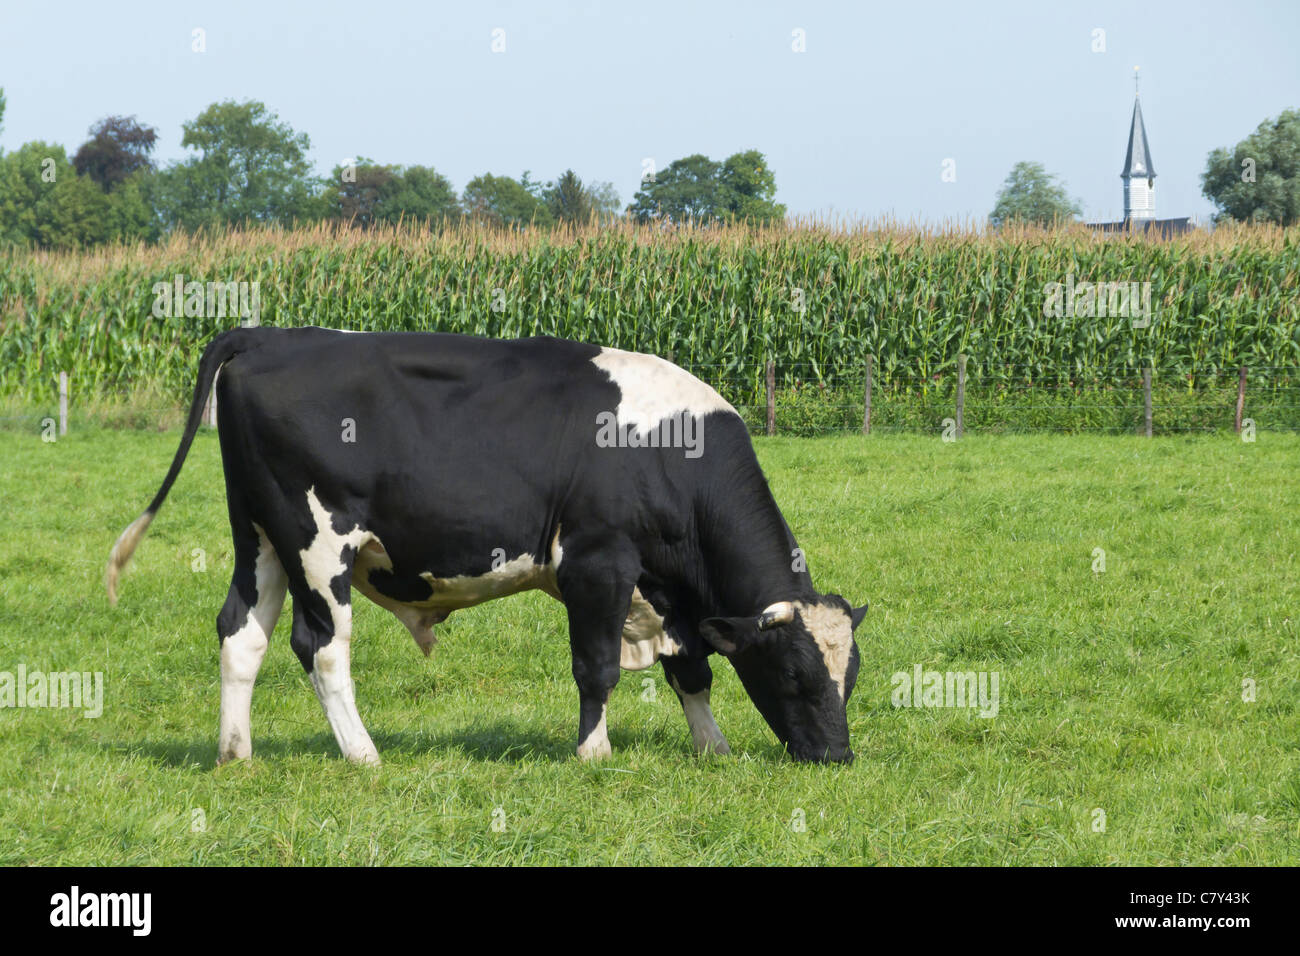 Cow Bull on Farmland Stock Photo